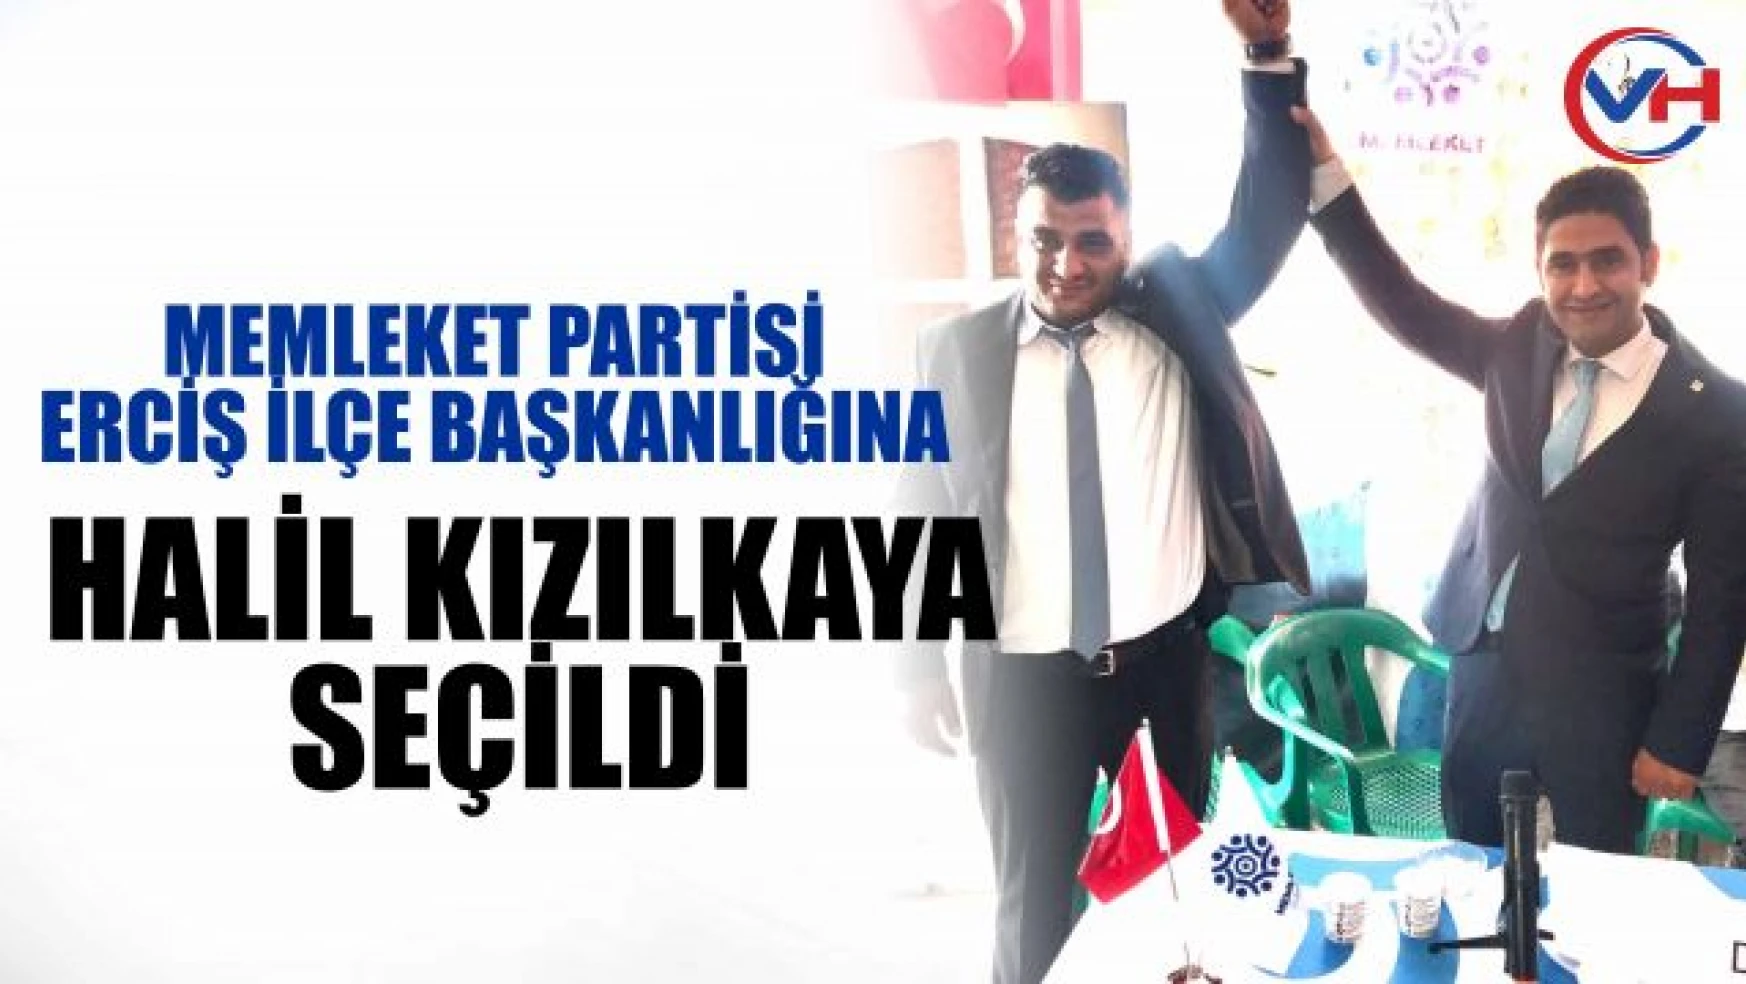 Memleket Partisi Erciş İlçe Başkanı belli oldu!